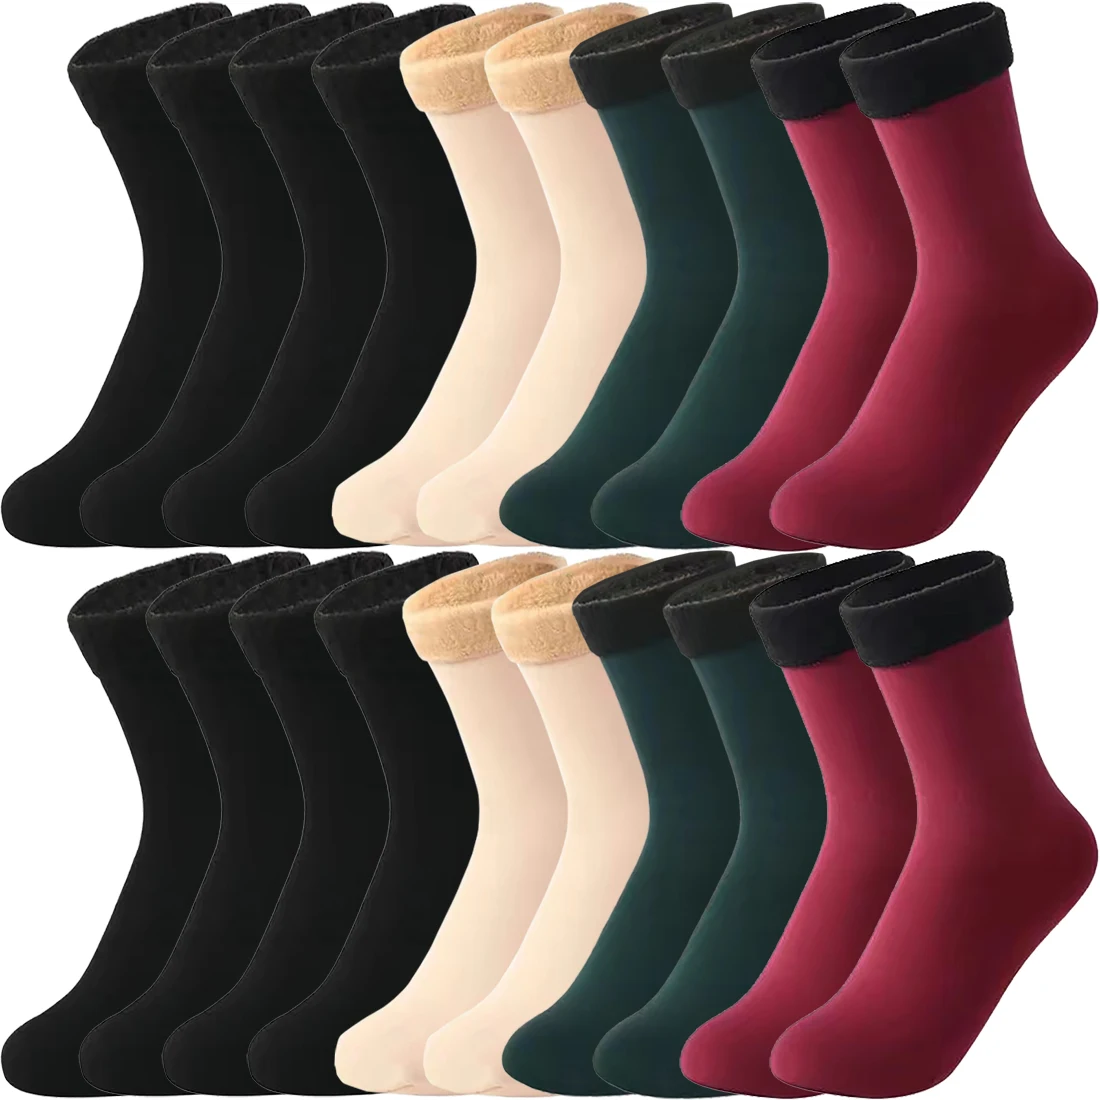 Winter Thermal Socks Black Khaki Velvet Boots Floor Socks So